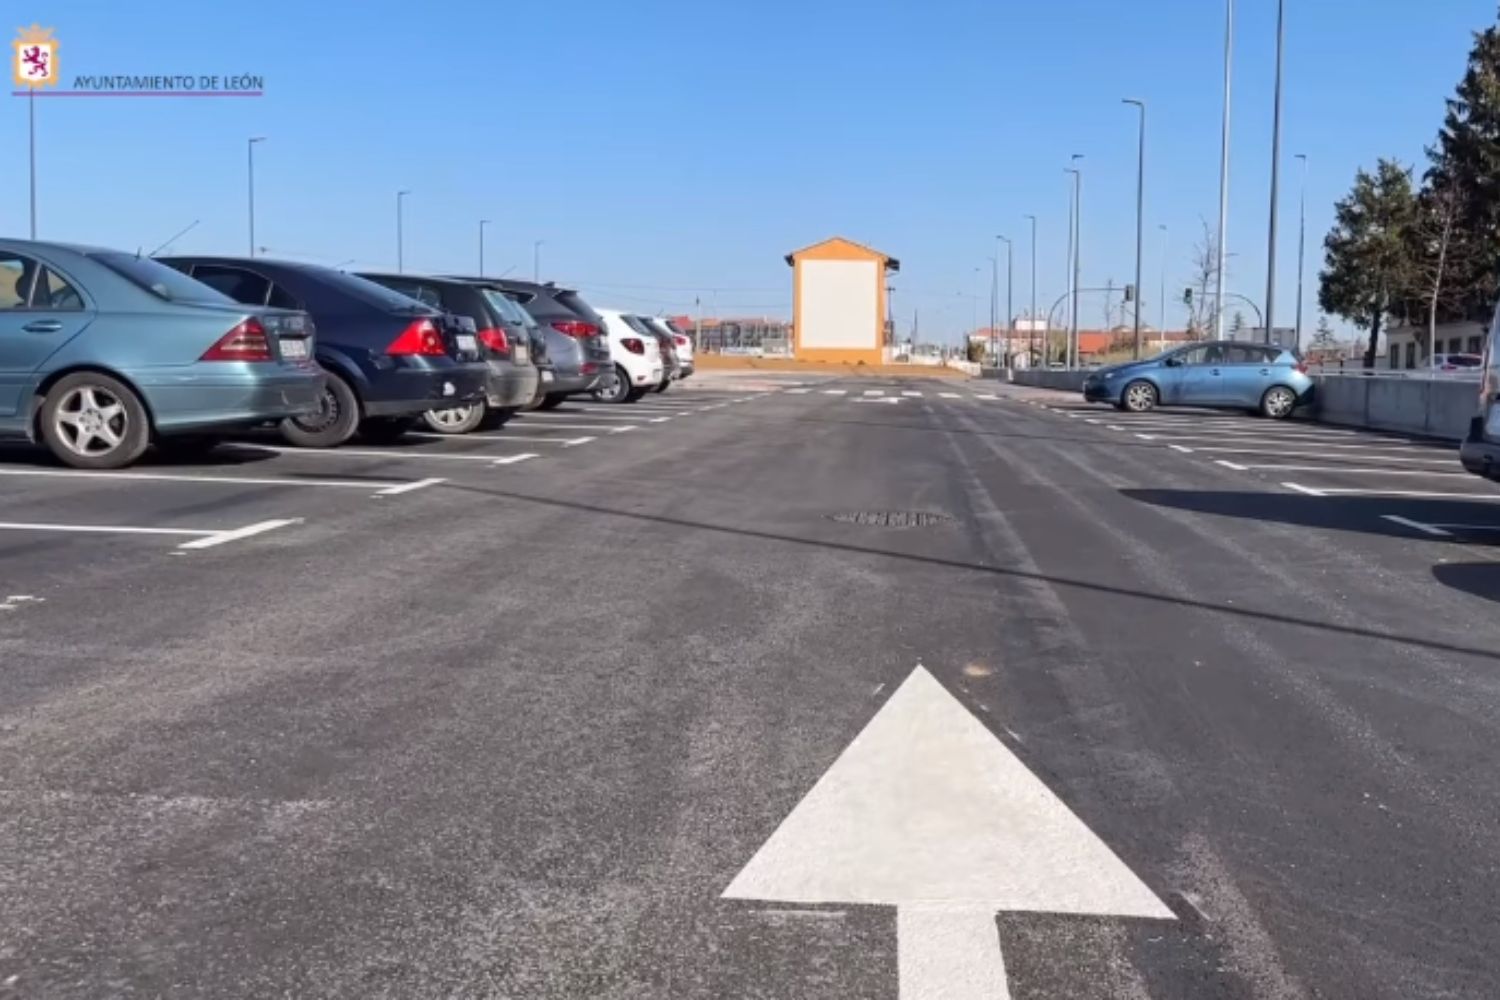 León estrena su esperada zona intermodal en la Avenida de Asturias con más de 200 plazas de aparcamiento 